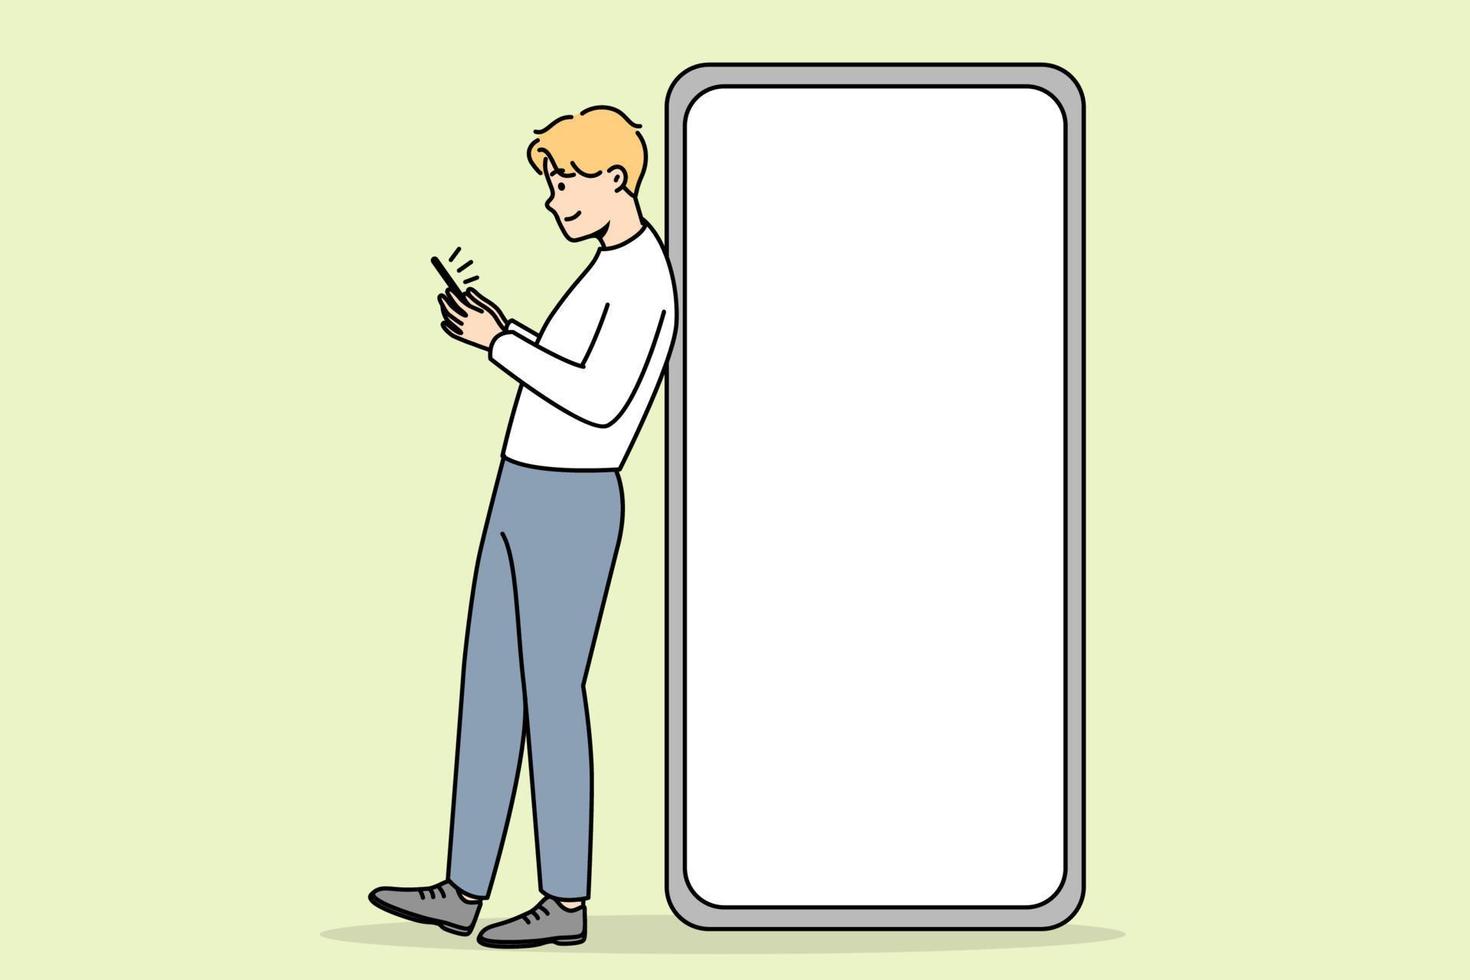 jeune homme debout près d'un énorme smartphone avec écran de maquette. gars pose près du téléphone portable avec affichage de l'espace de copie vierge vide. illustration vectorielle. vecteur